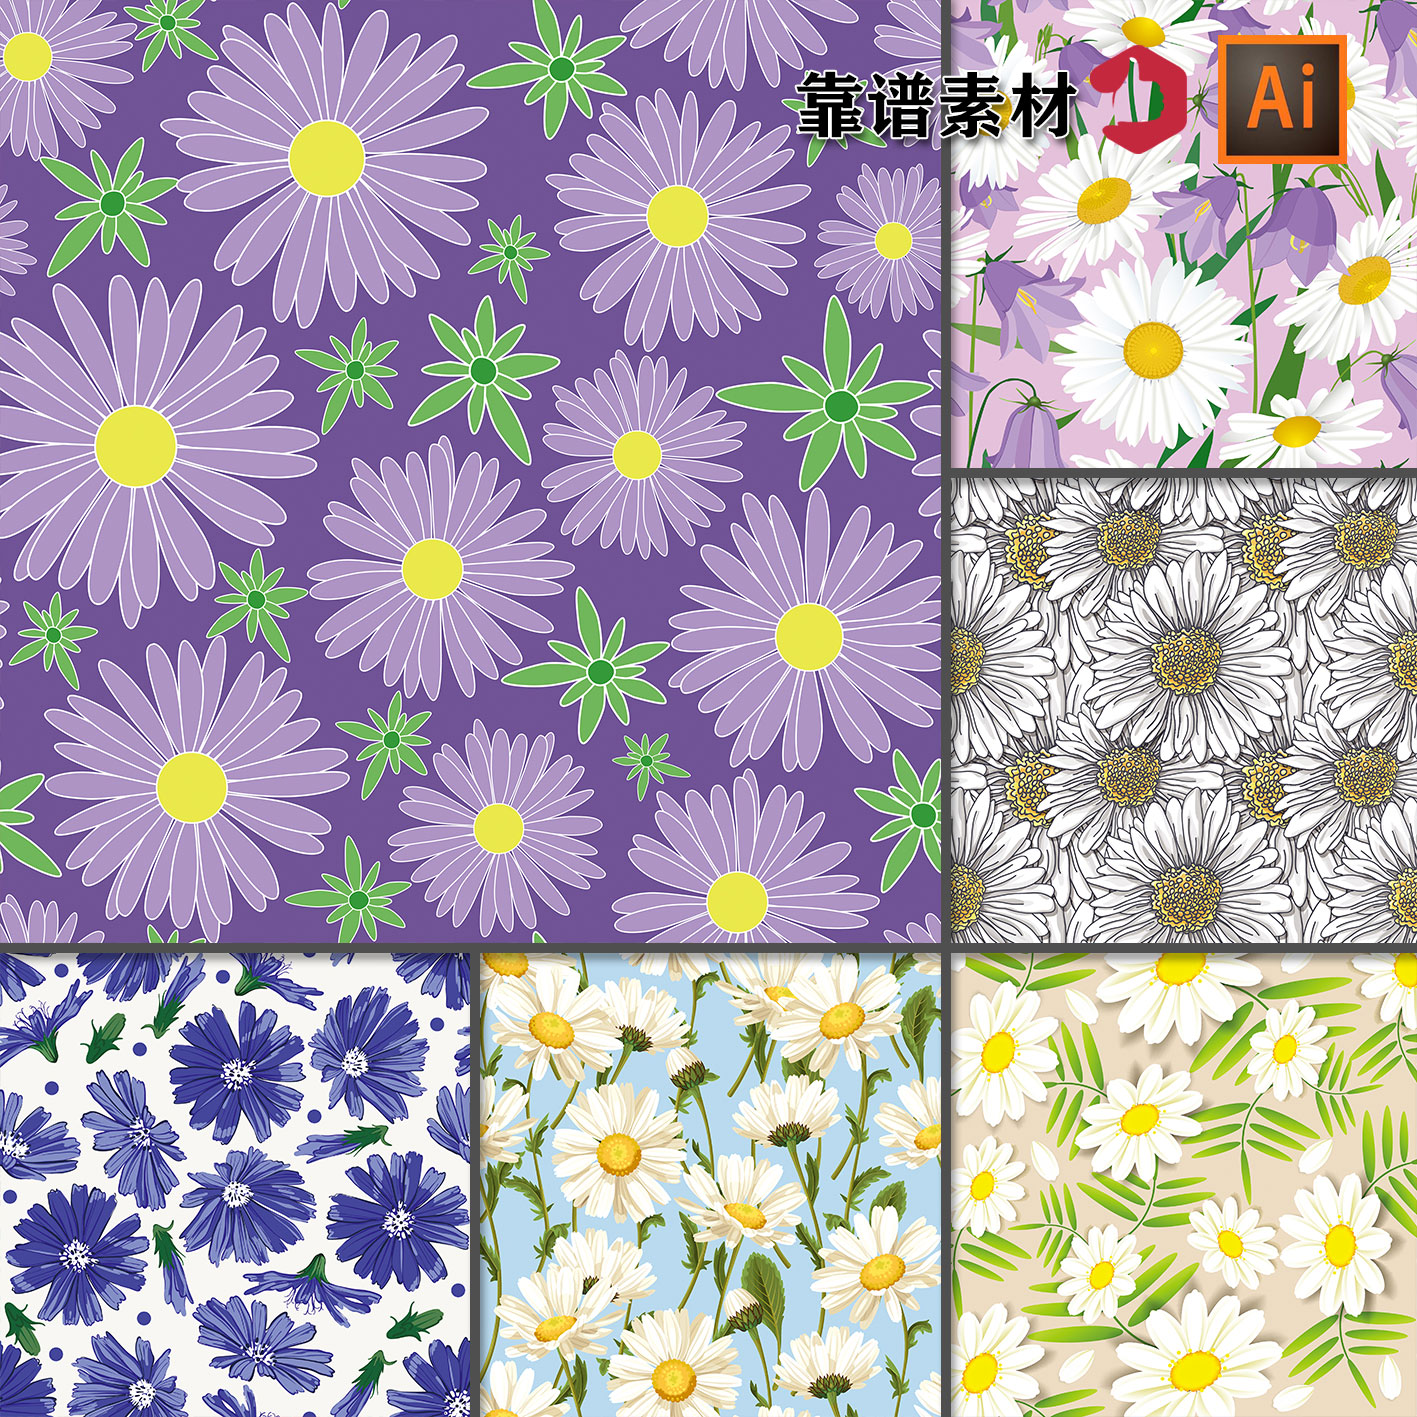 菊花鲜花花朵花卉碎花服饰服装印花图案墙纸AI矢量设计素材